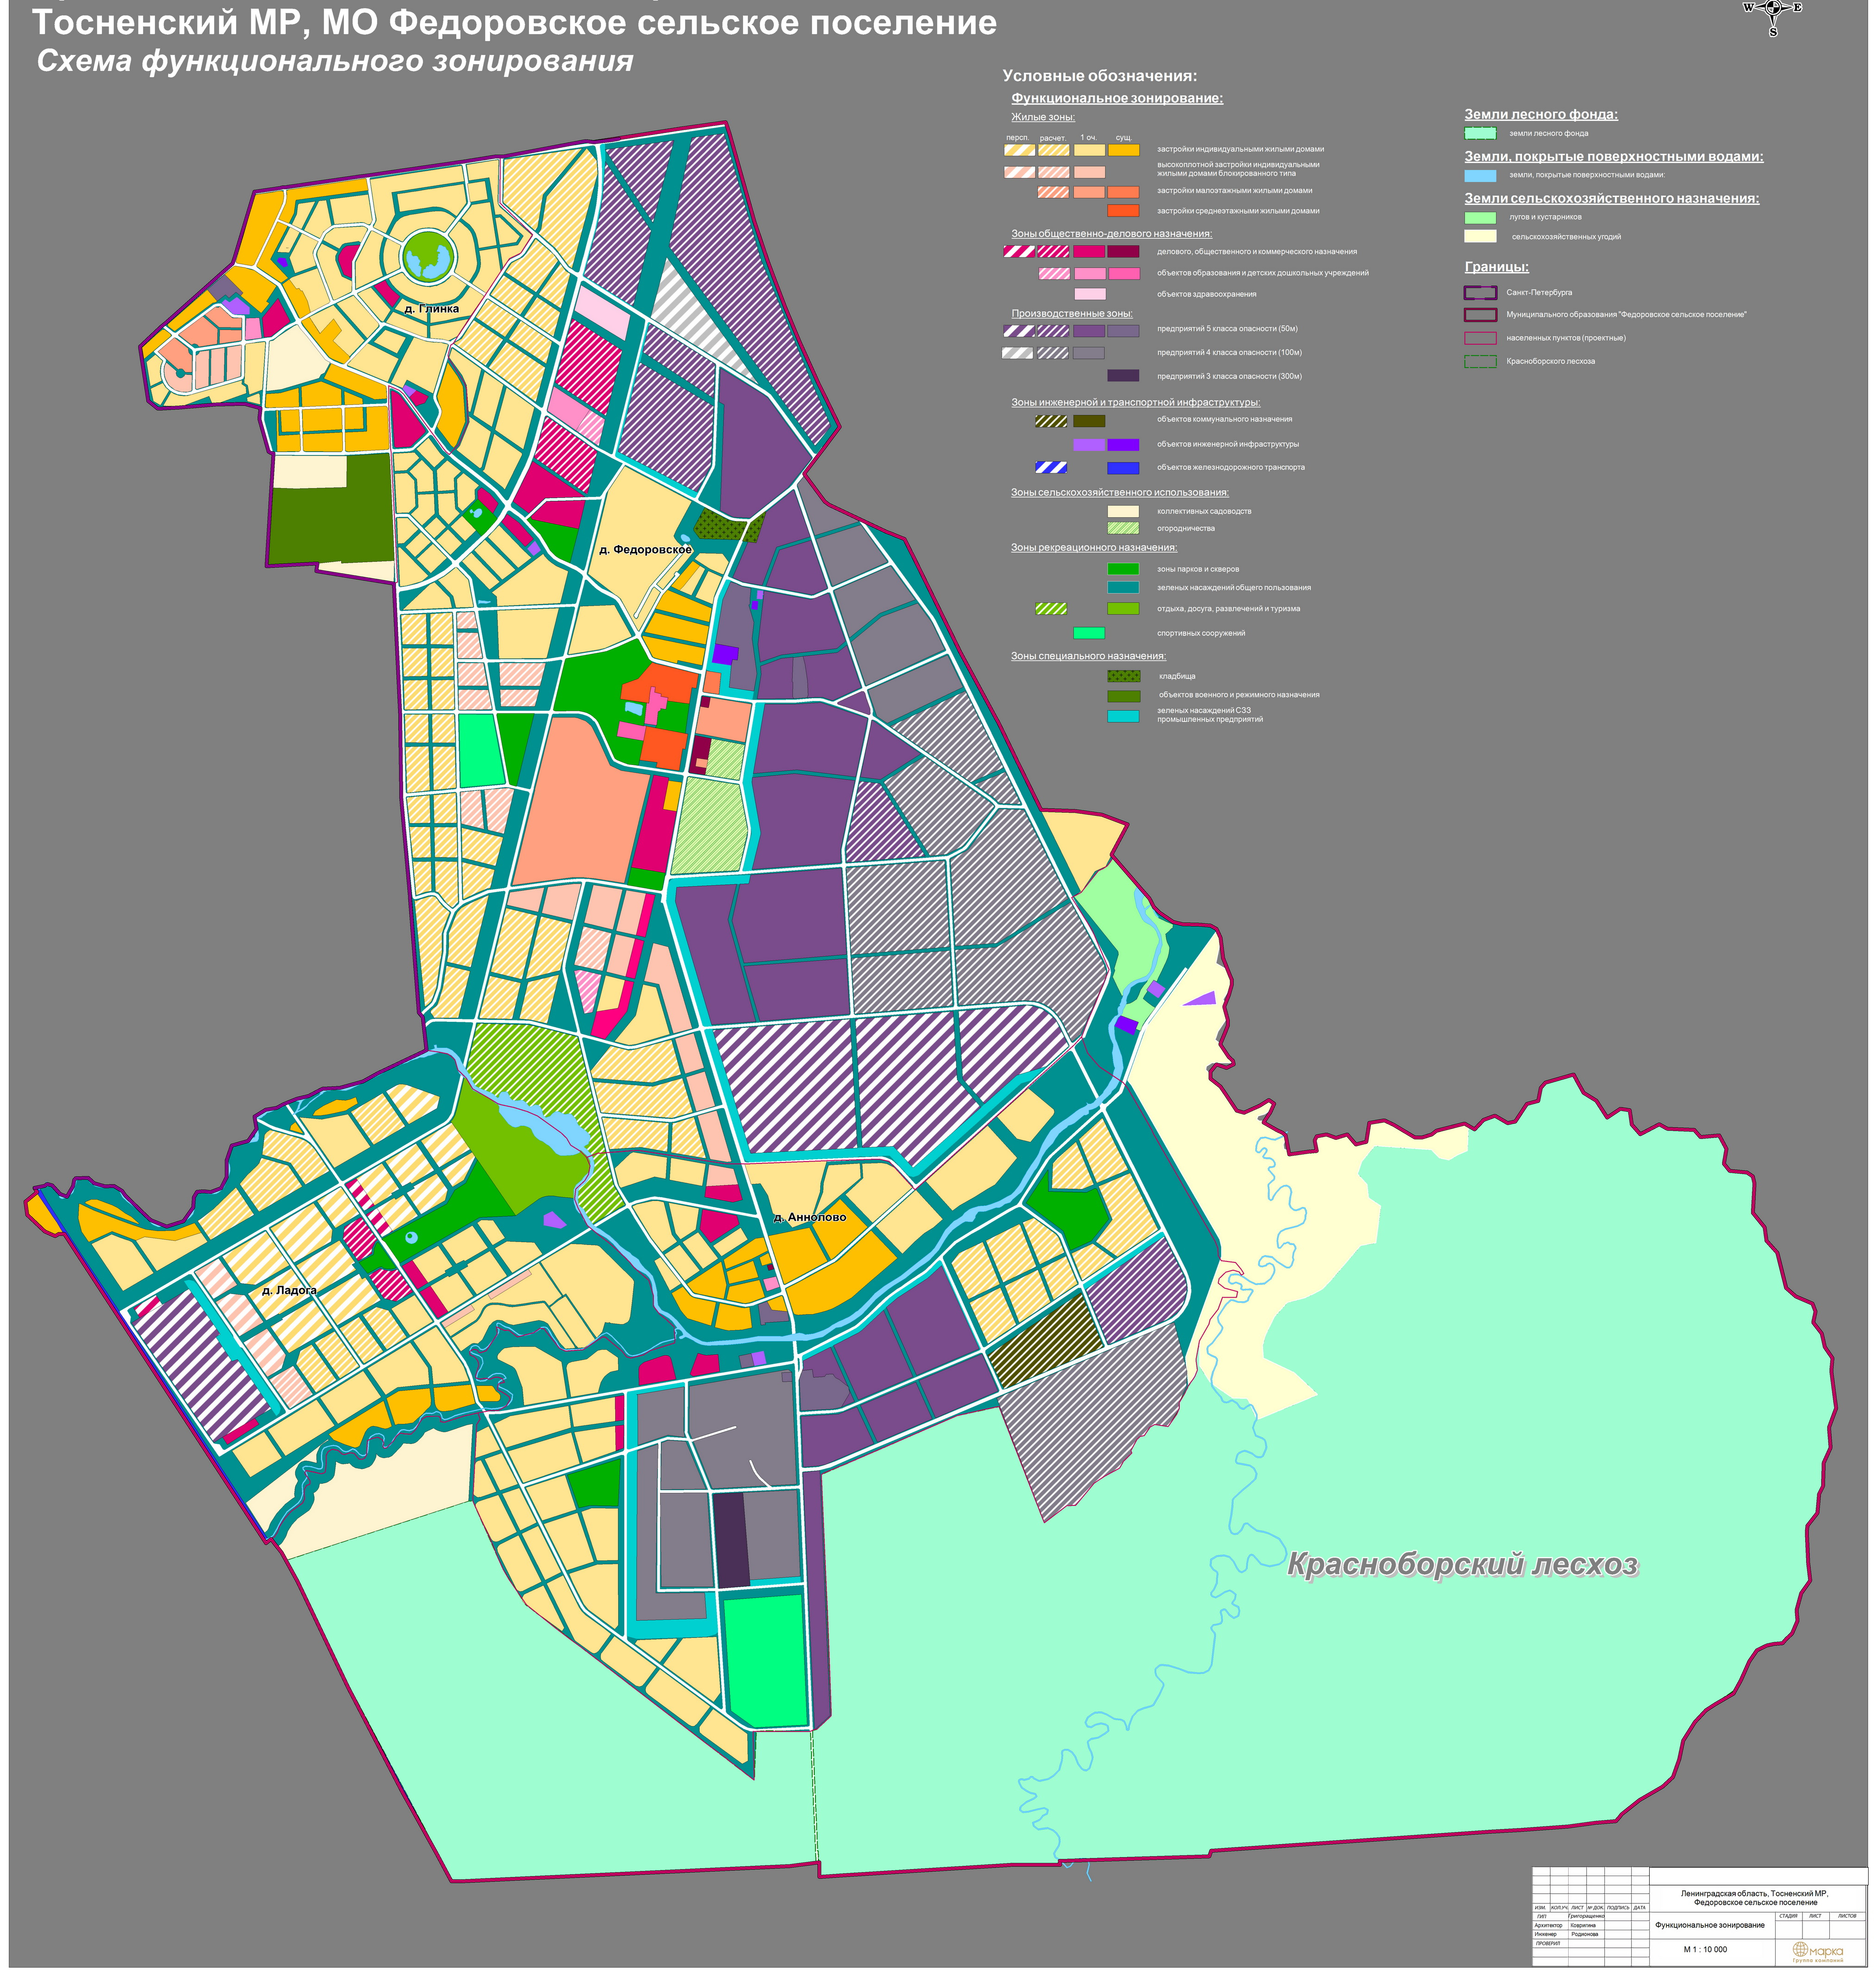 функциональное зонирование территорий поселений